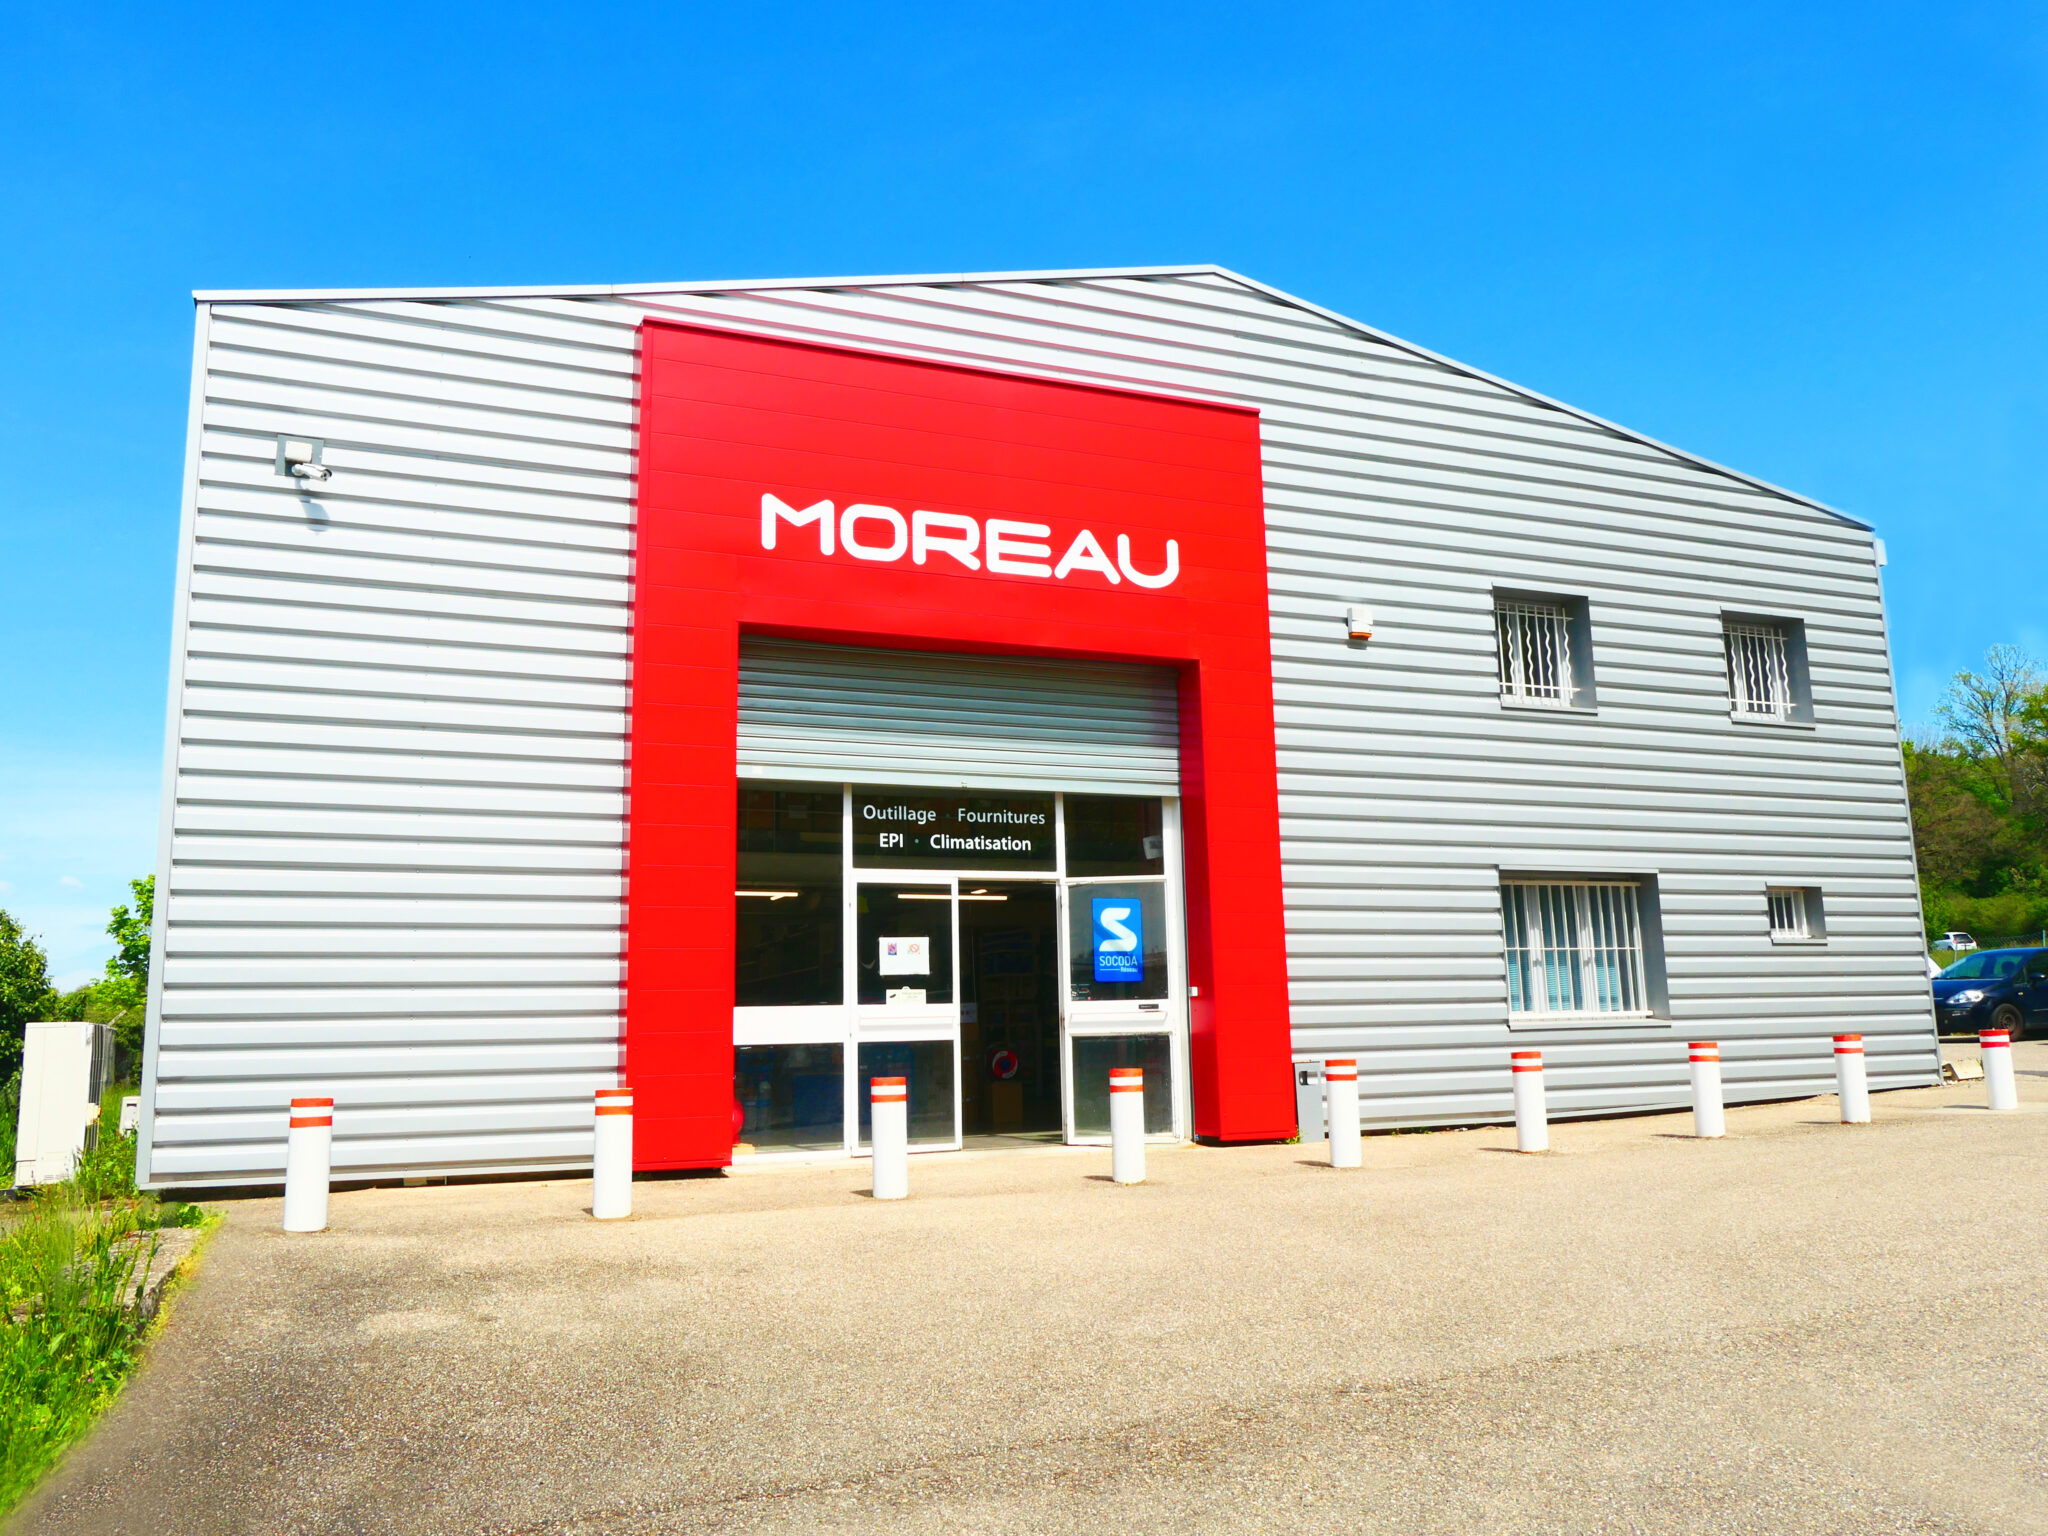 Photo du bâtiment de la société Moreau situé à Saint Genis Laval